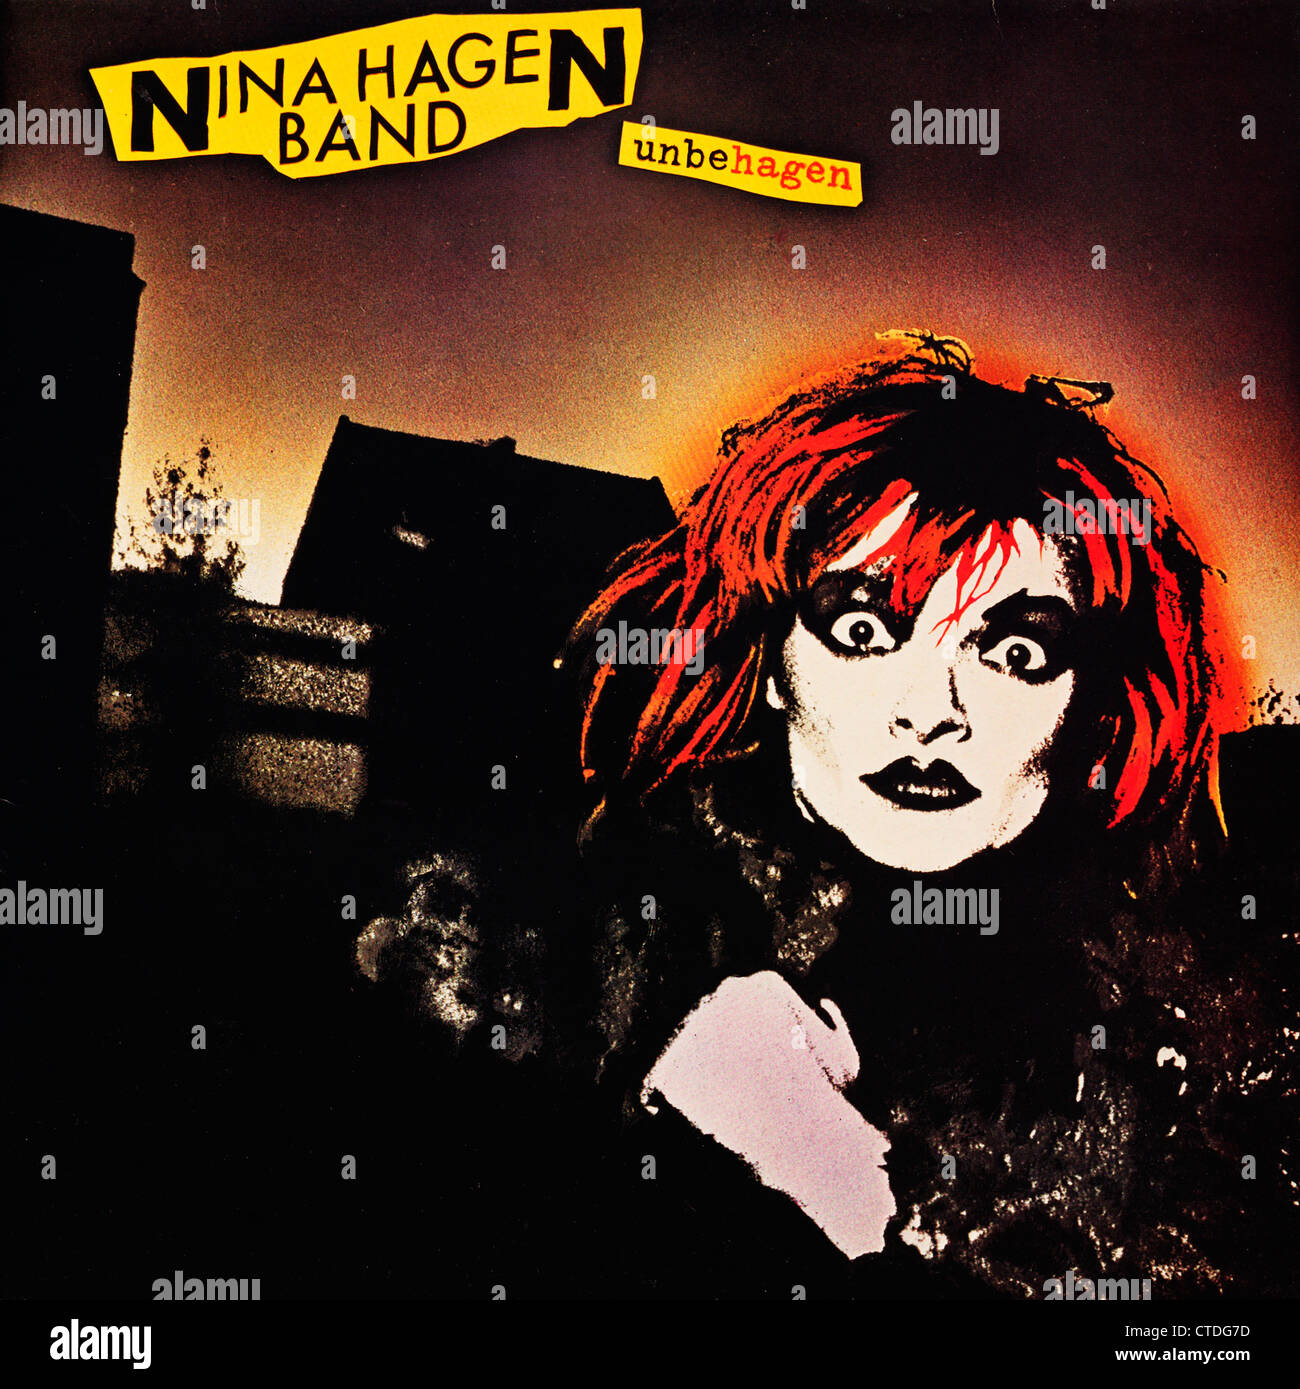 Nina Hagen Band Vinyl Schallplatte Cover - Unbehagen.  Nur zur redaktionellen Verwendung.  Kommerzielle Nutzung untersagt. Stockfoto